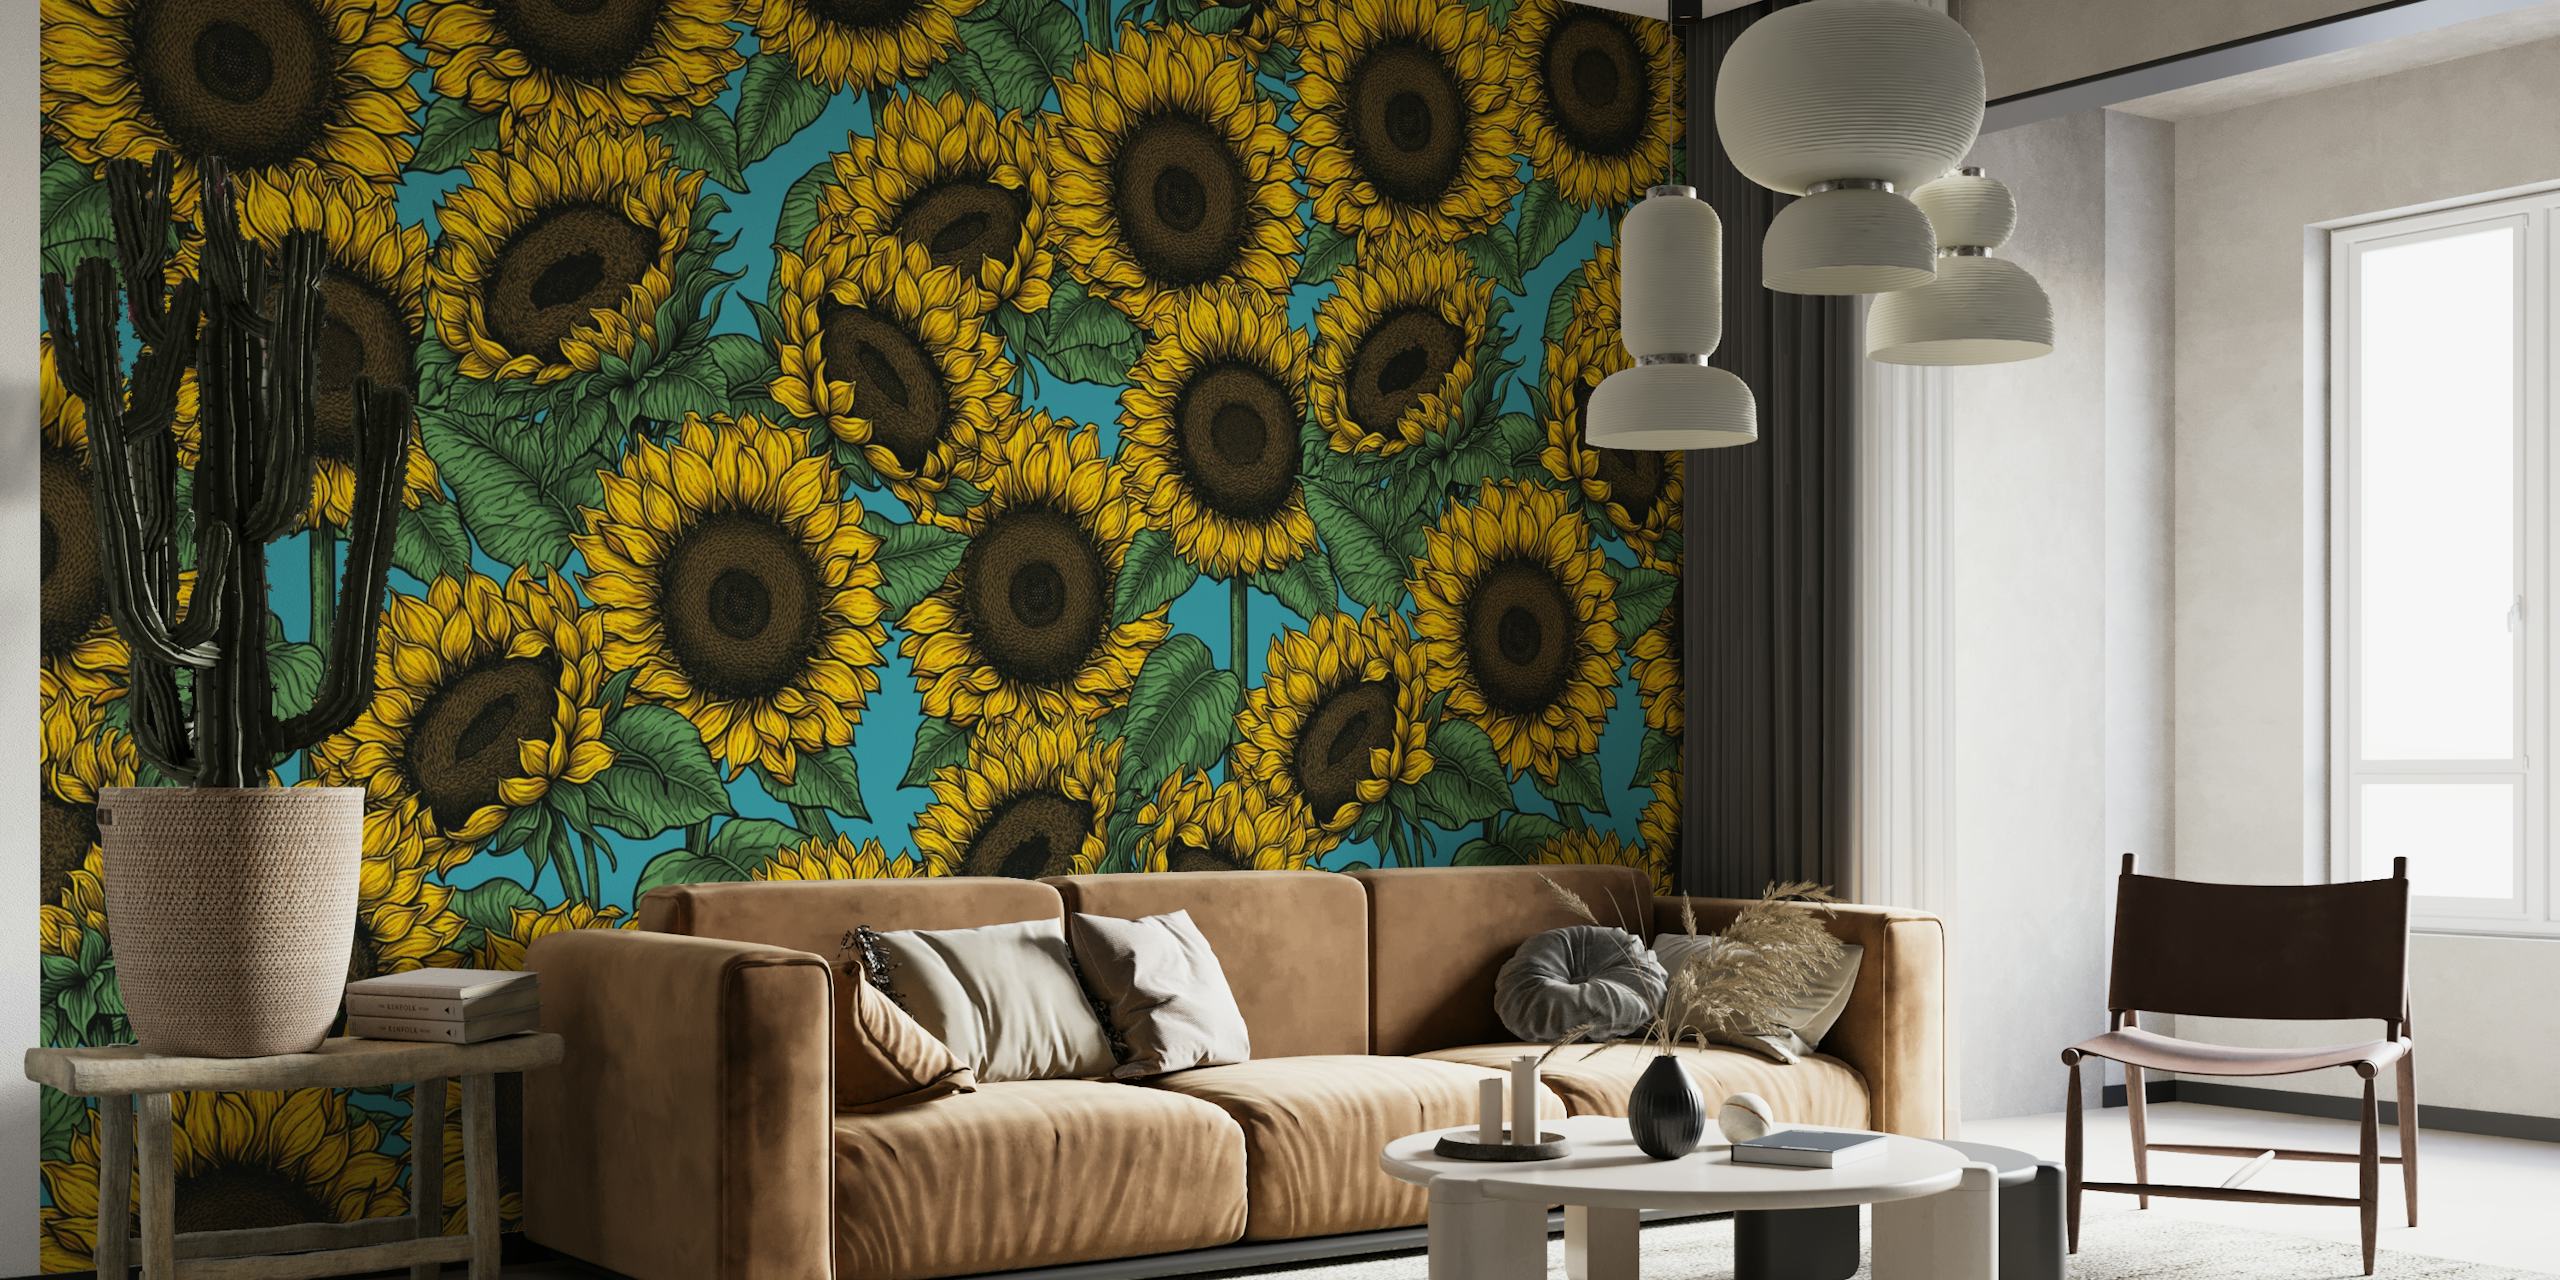 Eloisa auringonkukkaseinämaalaus täyteläisellä, kontrastivärisellä taustalla, täydellinen lisäämään kukkaistutusta mihin tahansa huoneeseen.